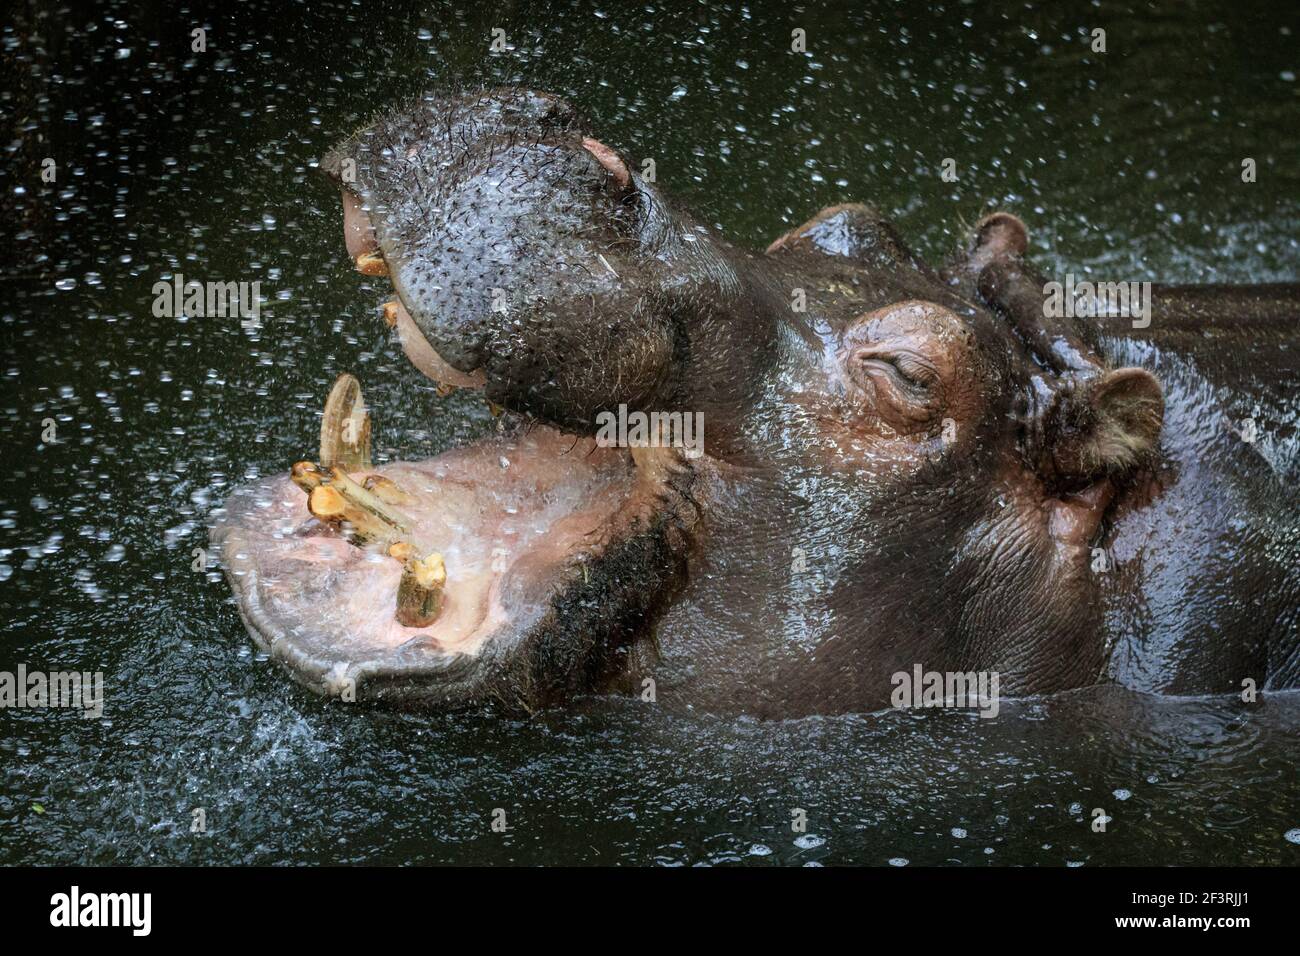 Zoom Zoo Gelsenkirchen, NRW, Allemagne, 17 mars 2021. Les femelles hippopotames (Hippopotamus amphibius) SUSE et Arita apprécient clairement leur nettoyage dentaire et leur lavage de bouche administré par tuyau d'eau. Les zoos du NRW se rouvrent progressivement avec des directives strictes sur les covidés cette semaine, après des mois de fermeture, pour être potentiellement menacés d'avoir à fermer à nouveau la semaine prochaine en raison de la hausse des taux d'incidence. Banque D'Images